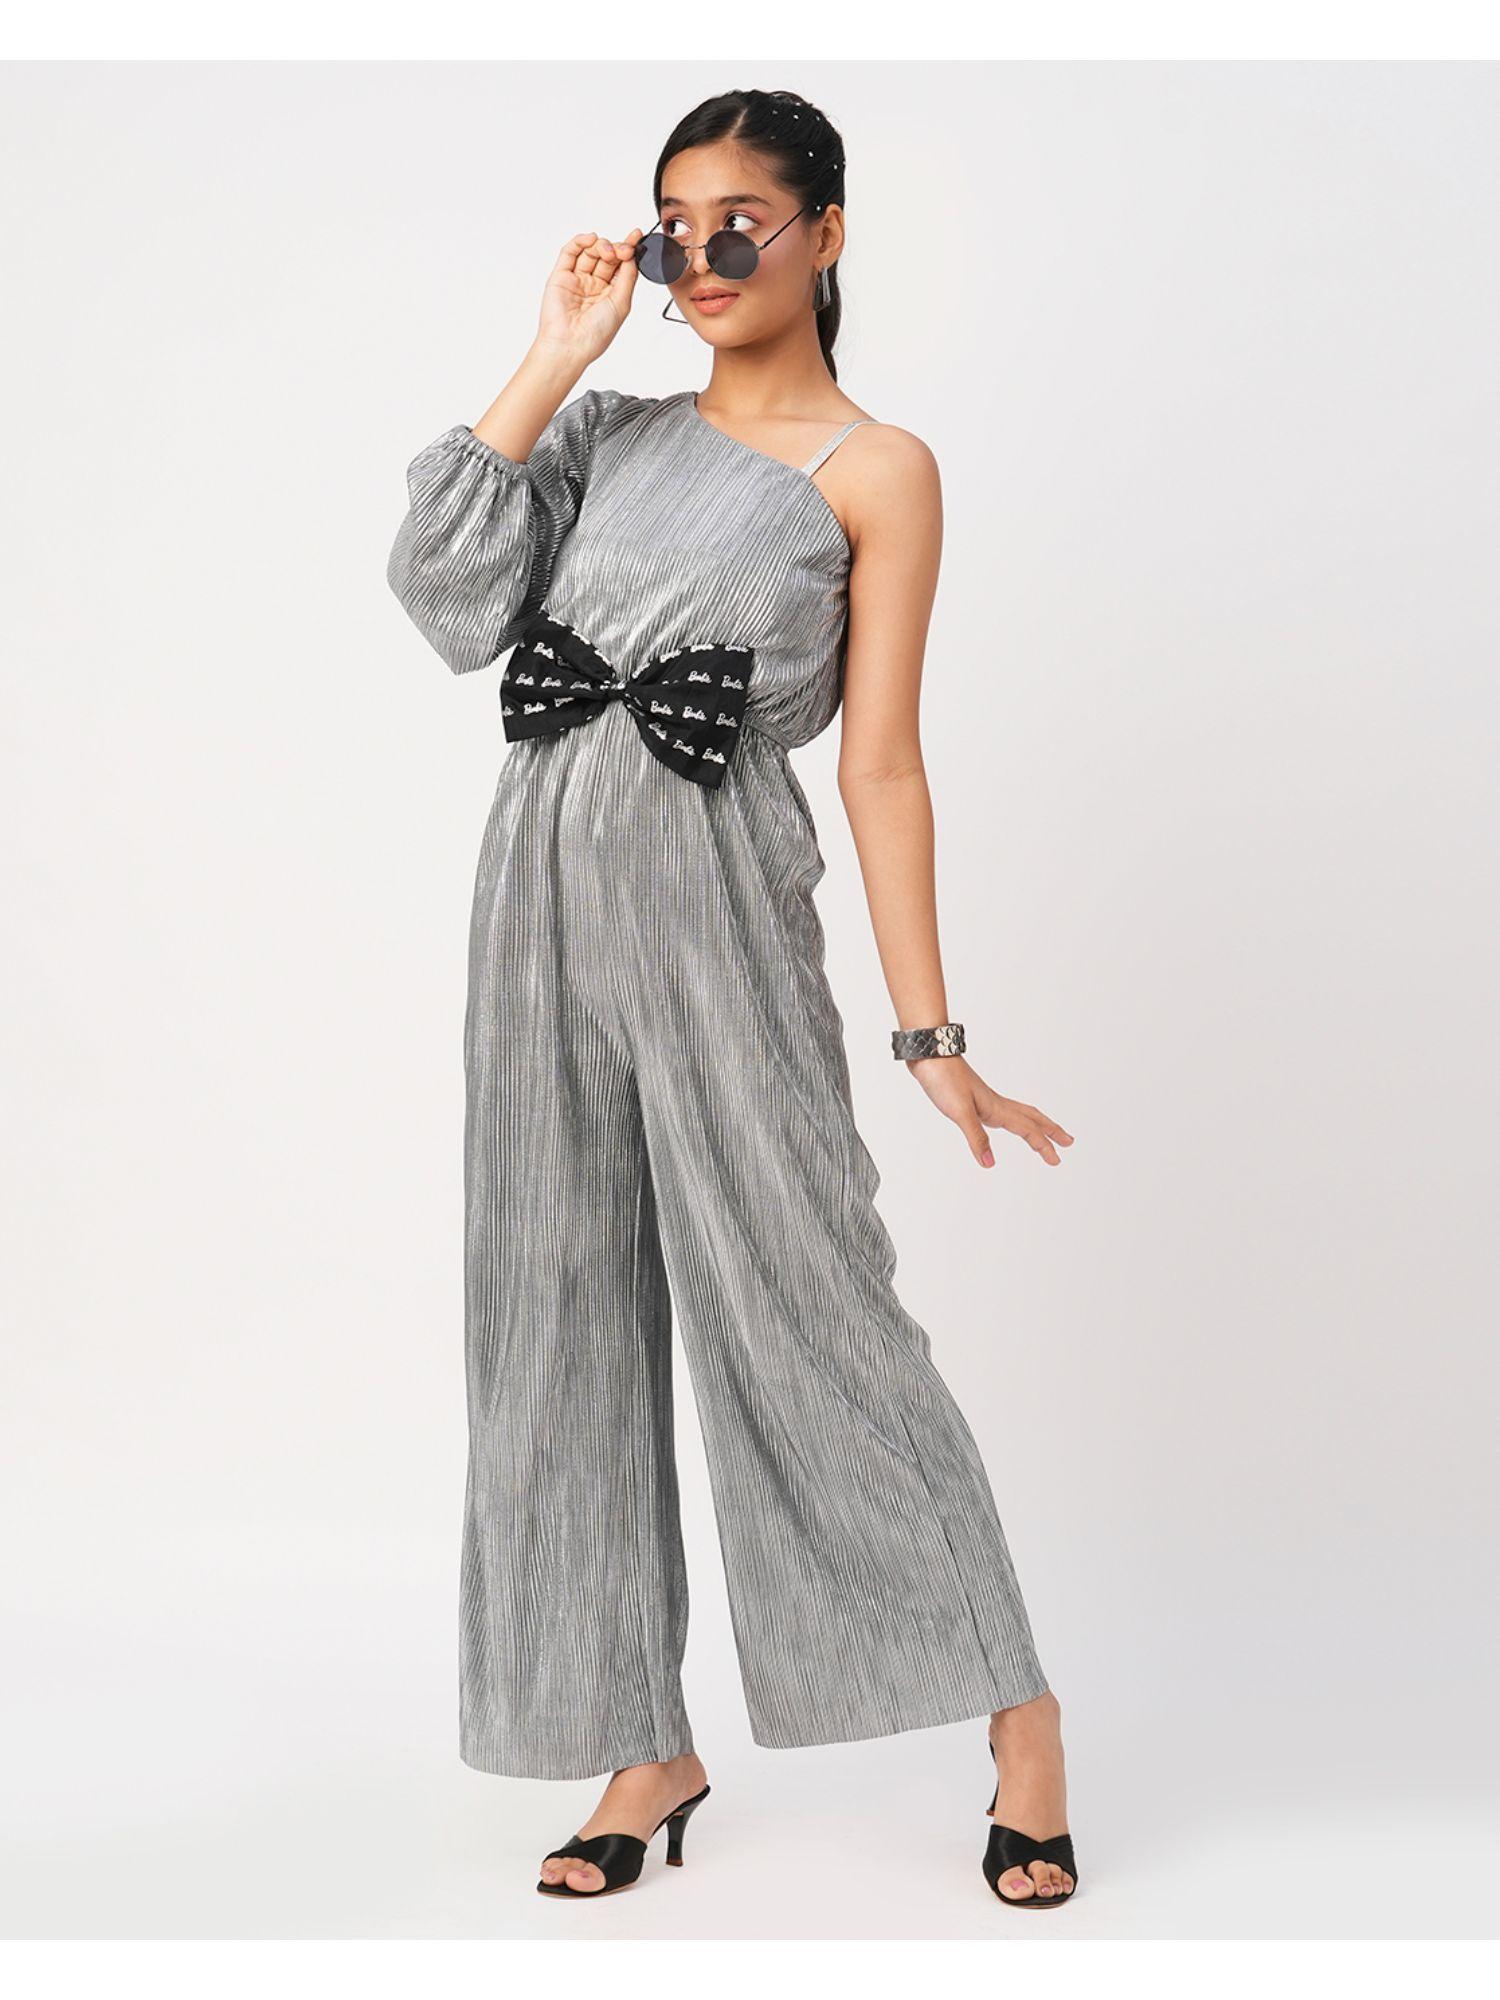 barbie silver shimmer rockstar grey jumpsuit for girls